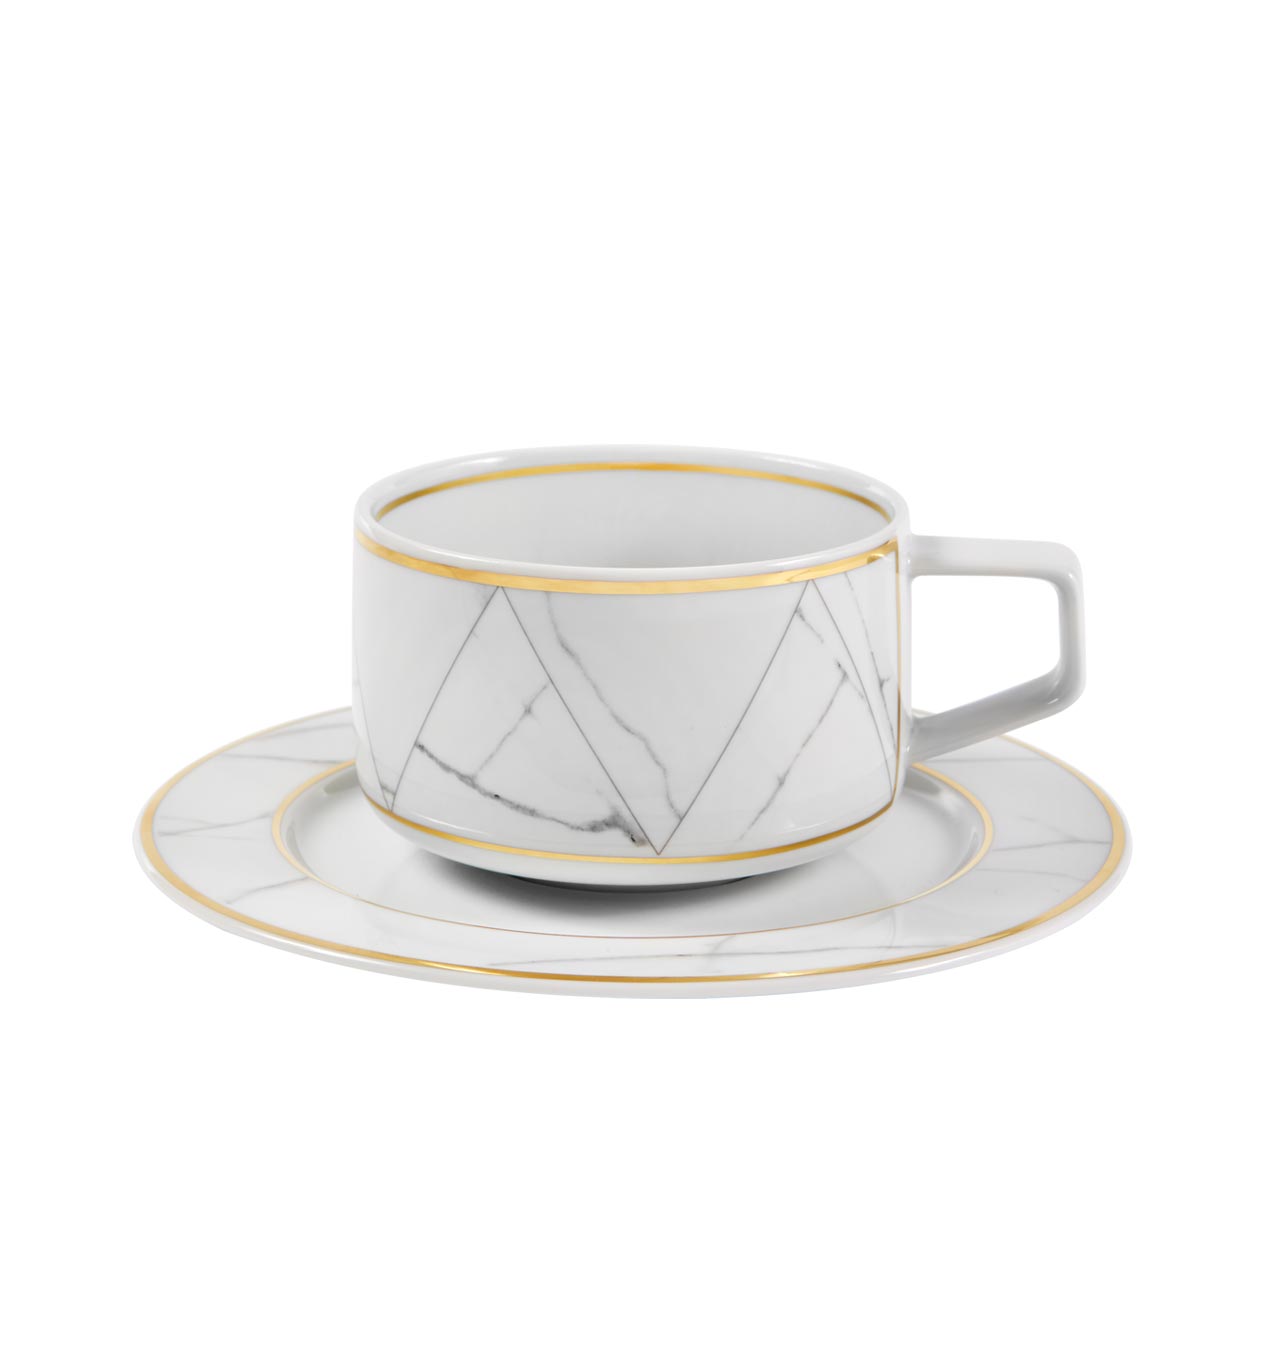 Vista Alegre Collection Carrara tea cup and saucer